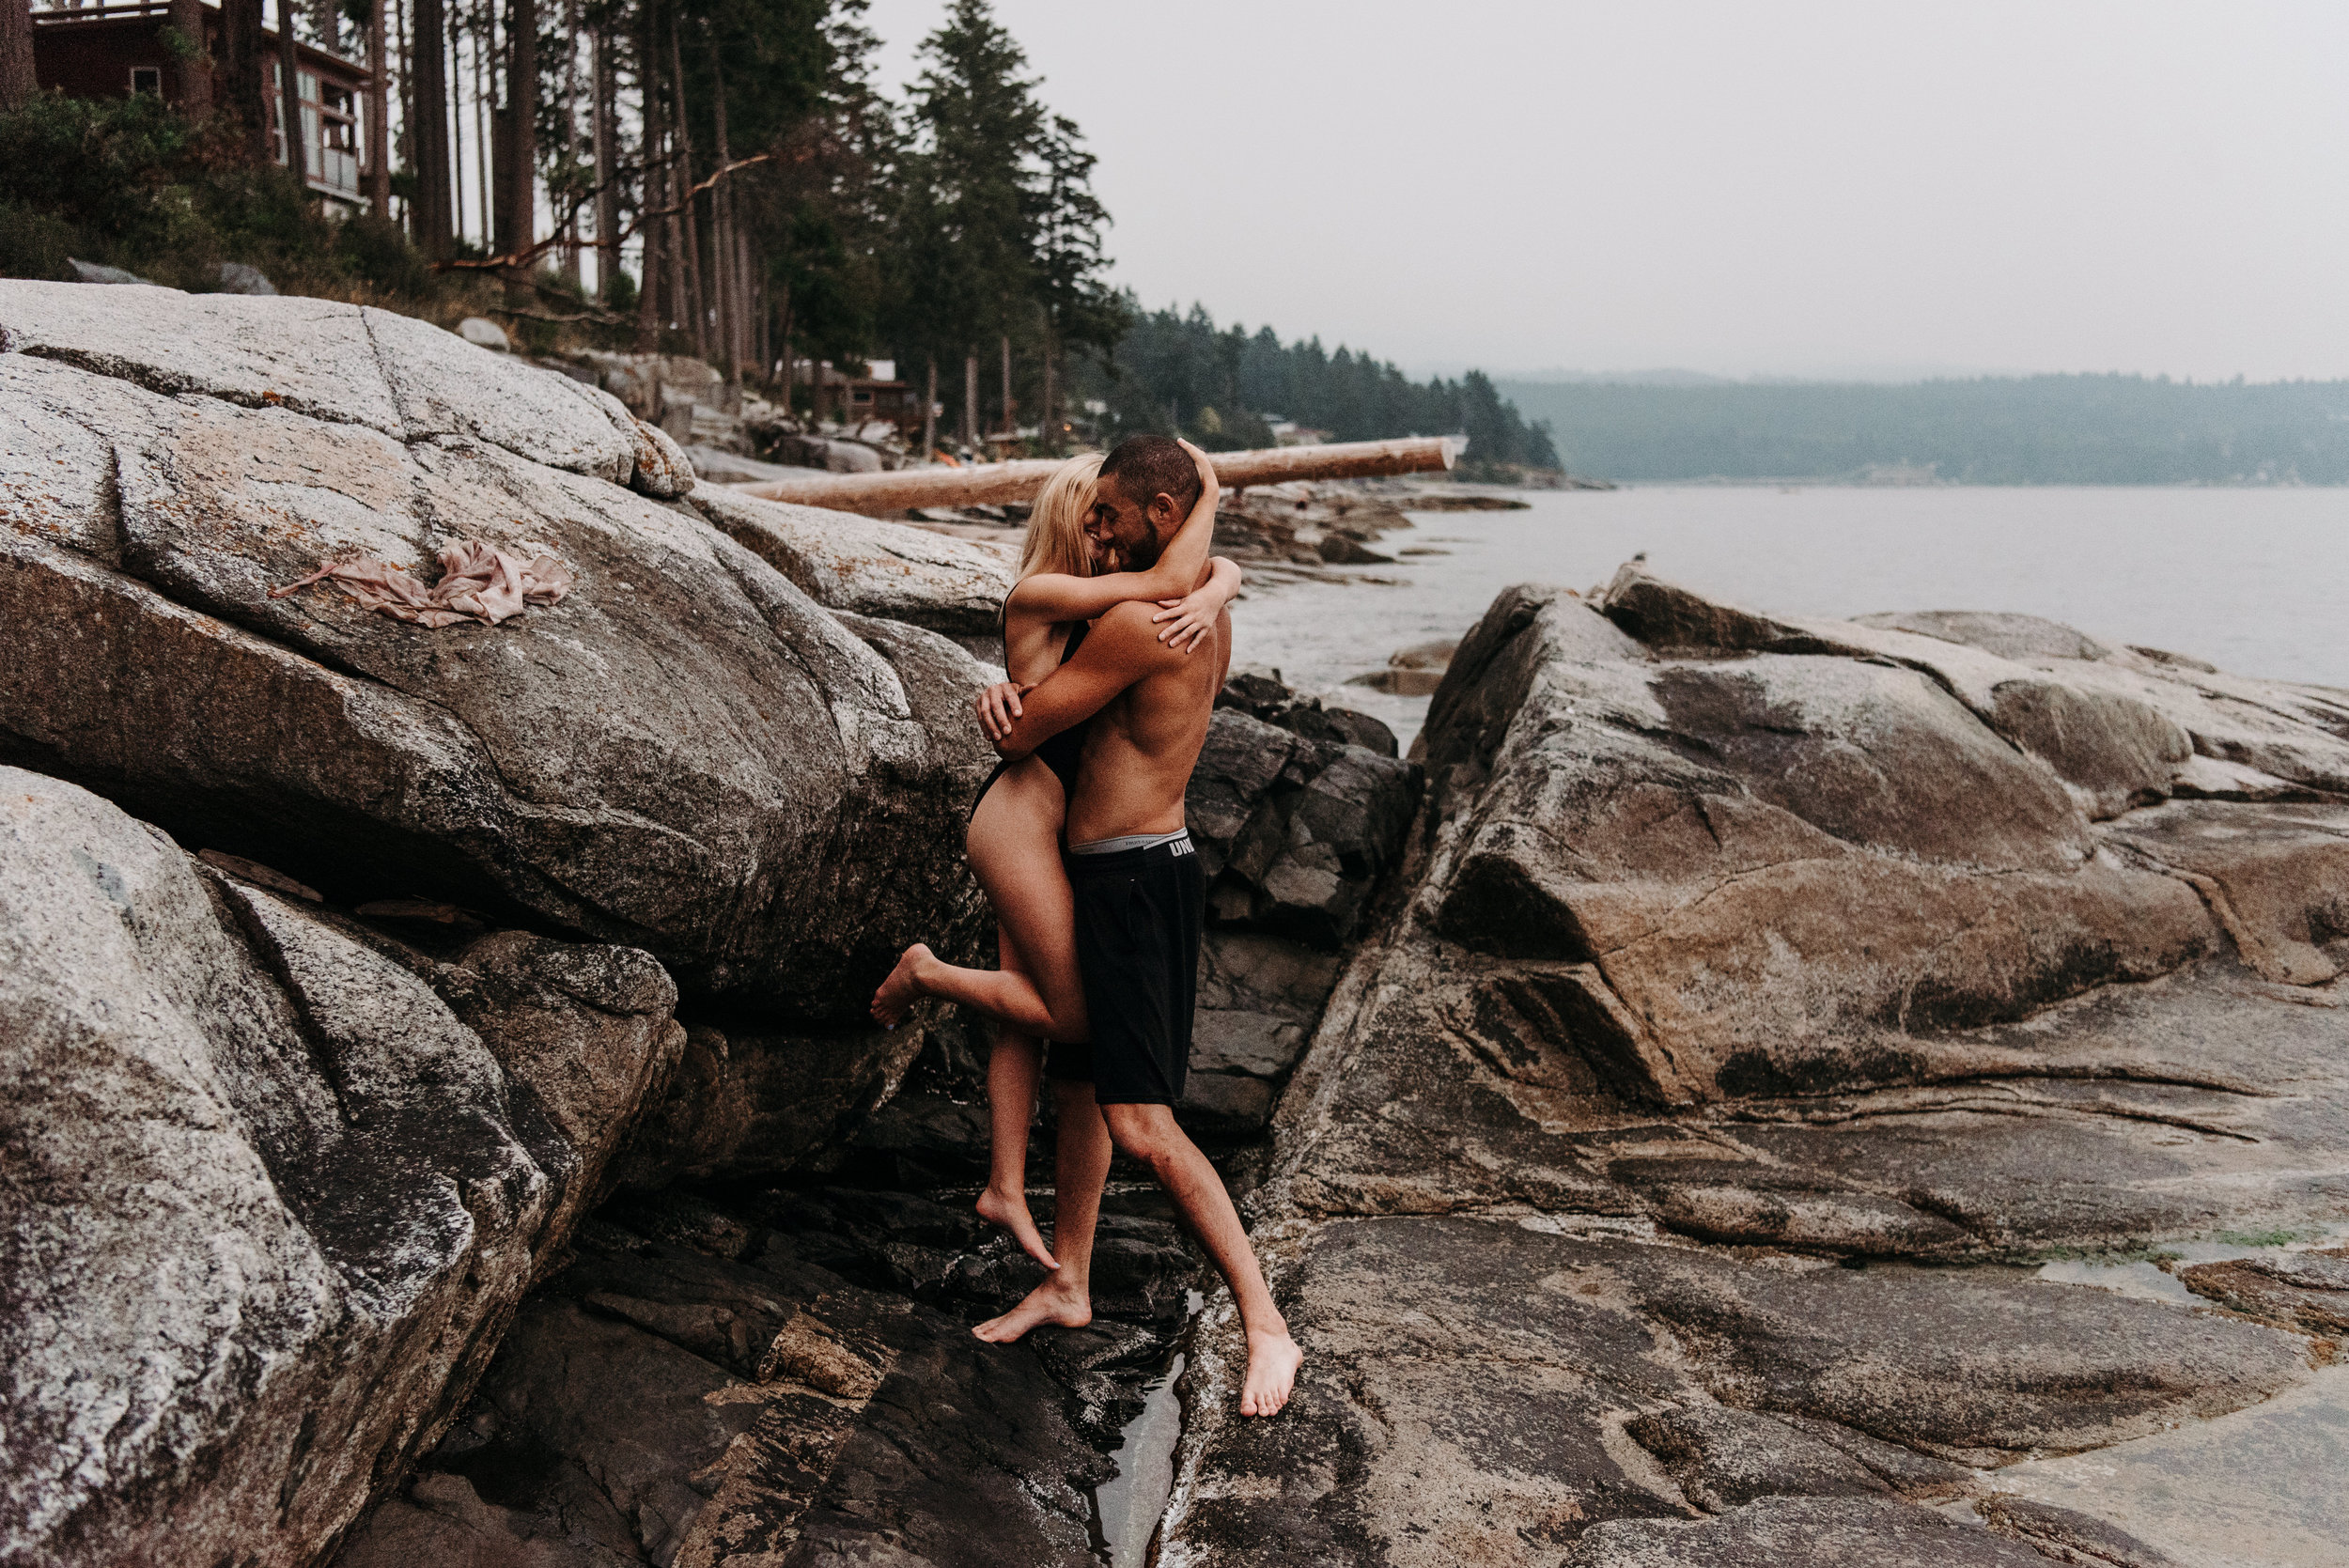 Sierra & Tyler Summer Beach Couples Session - Laura Olson Photography - Sunshine Coast BC Photographer-2731.jpg